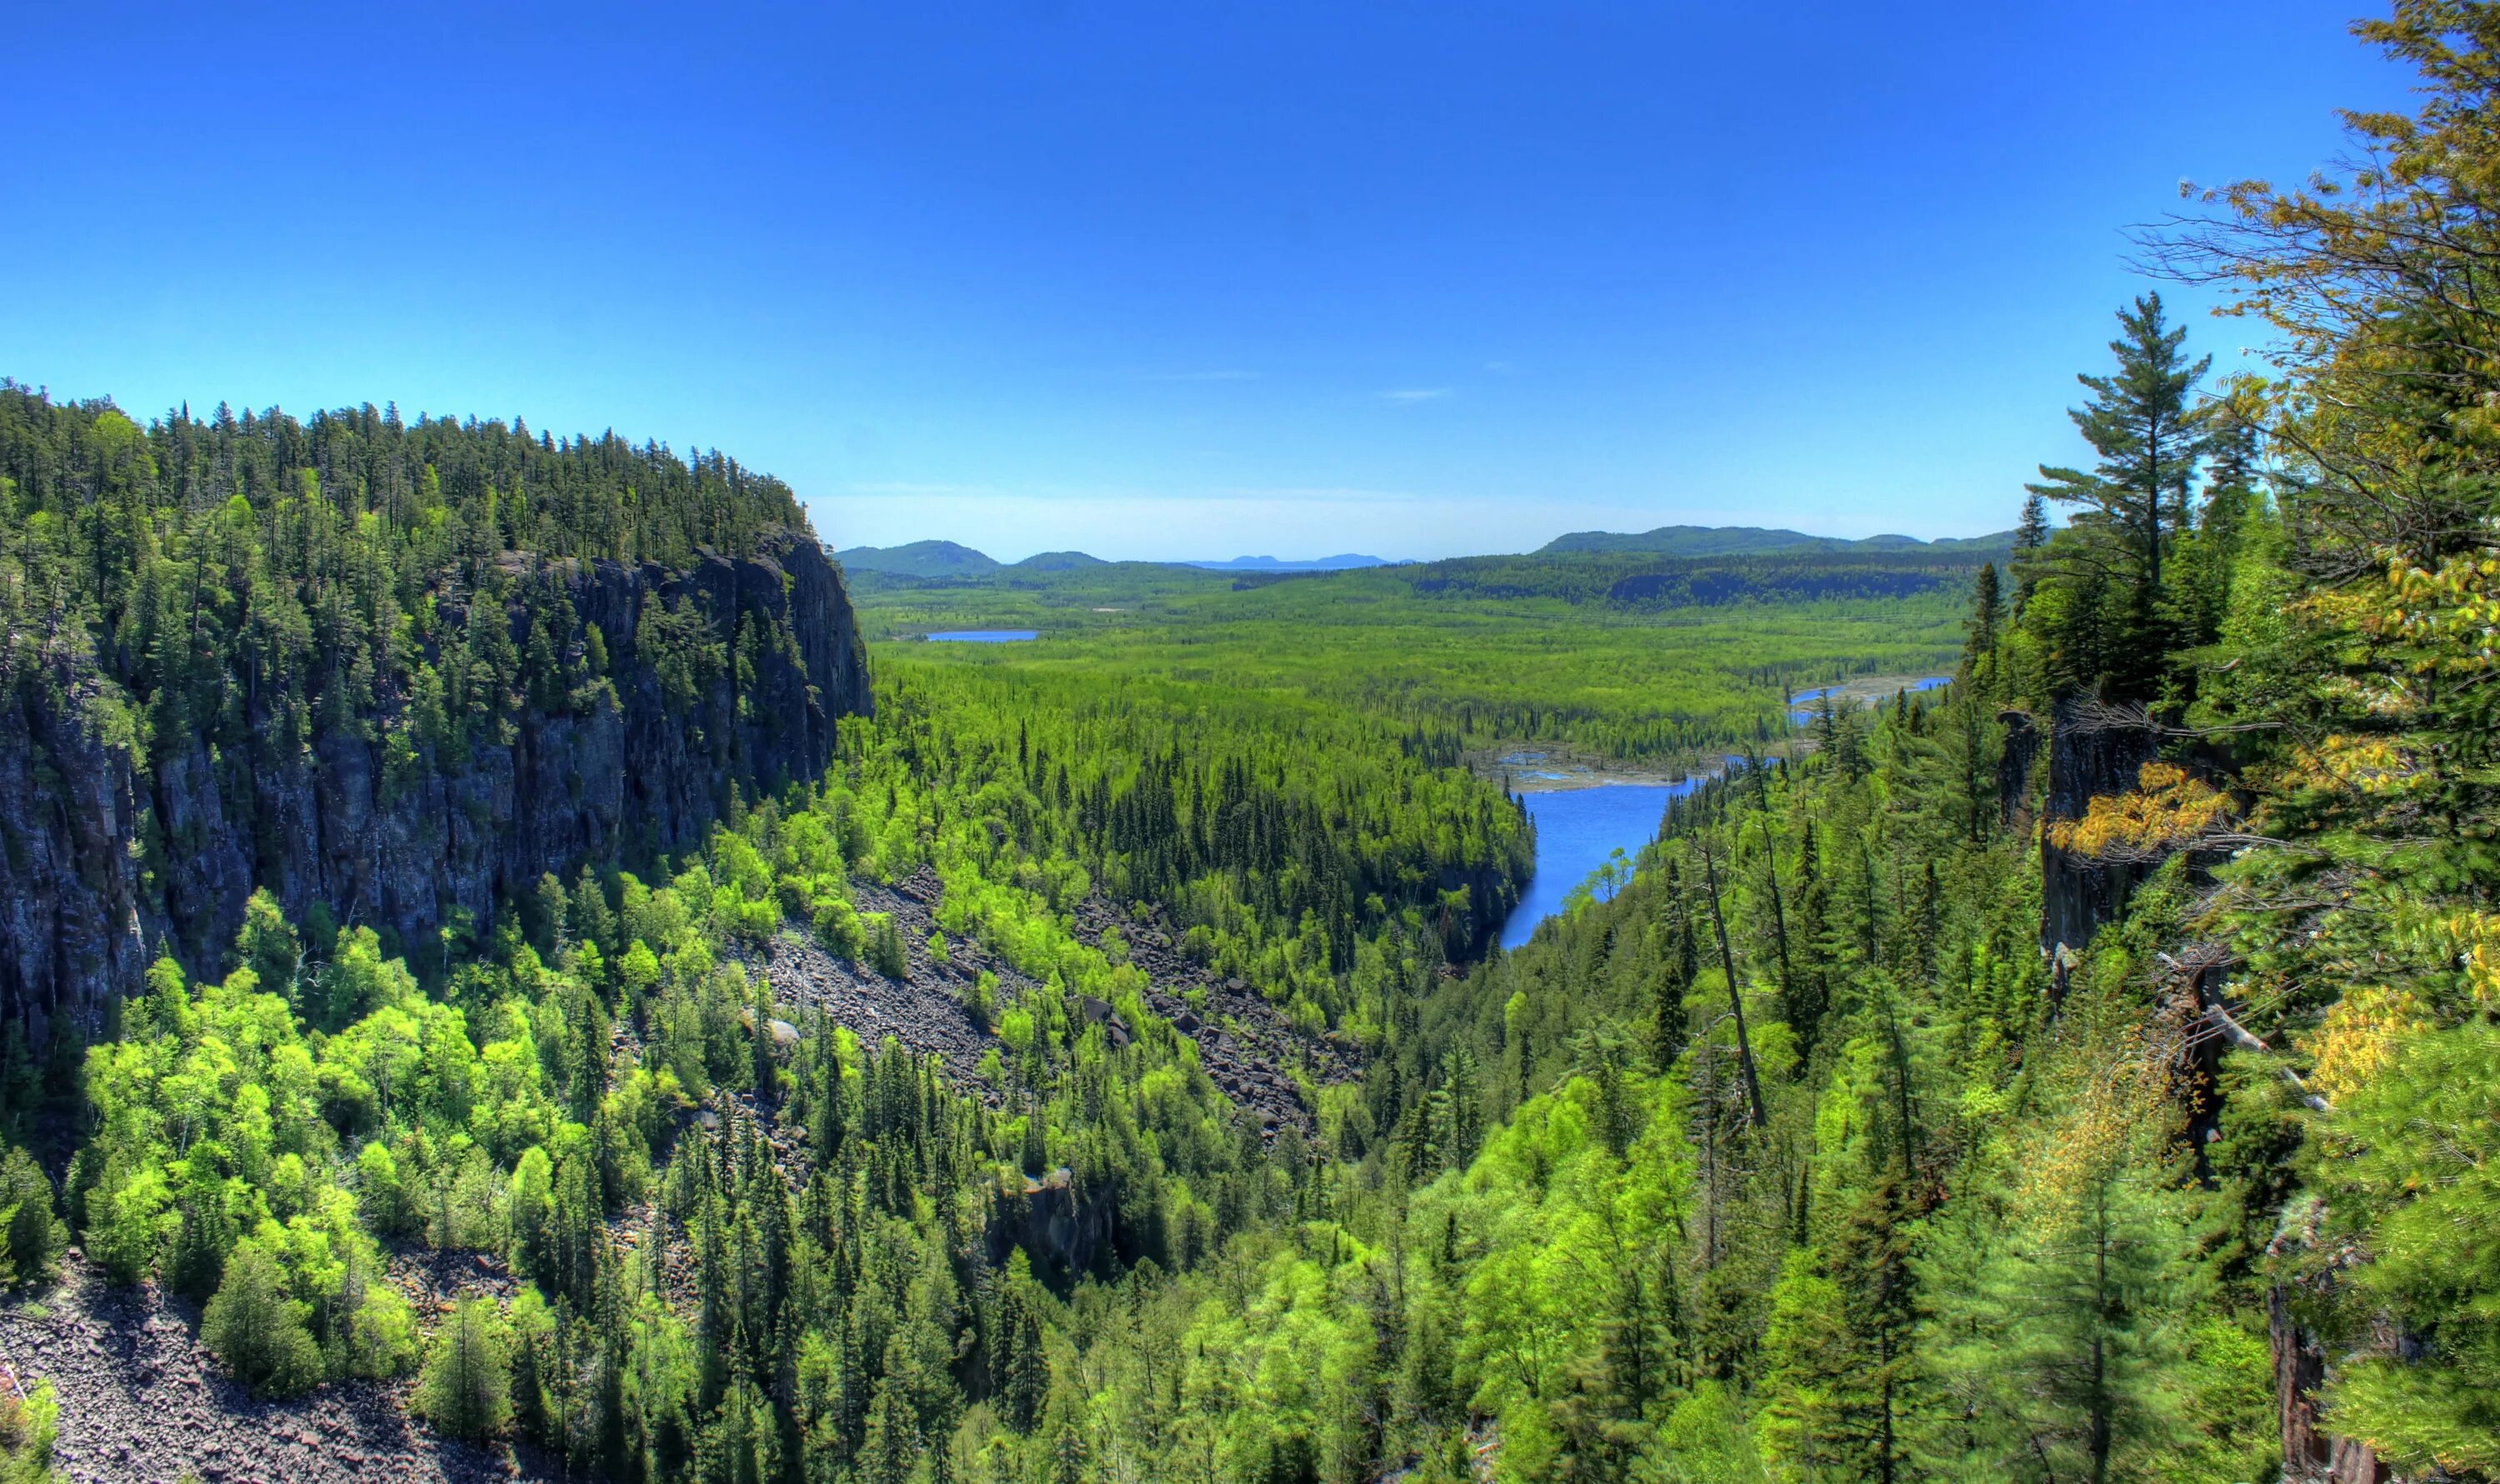 Богатство северного края. Бореальные леса Северной Америки. Canada Лесные ресурсы. Лесные ресурсы Северной Америки. Бореальский лес Канада.